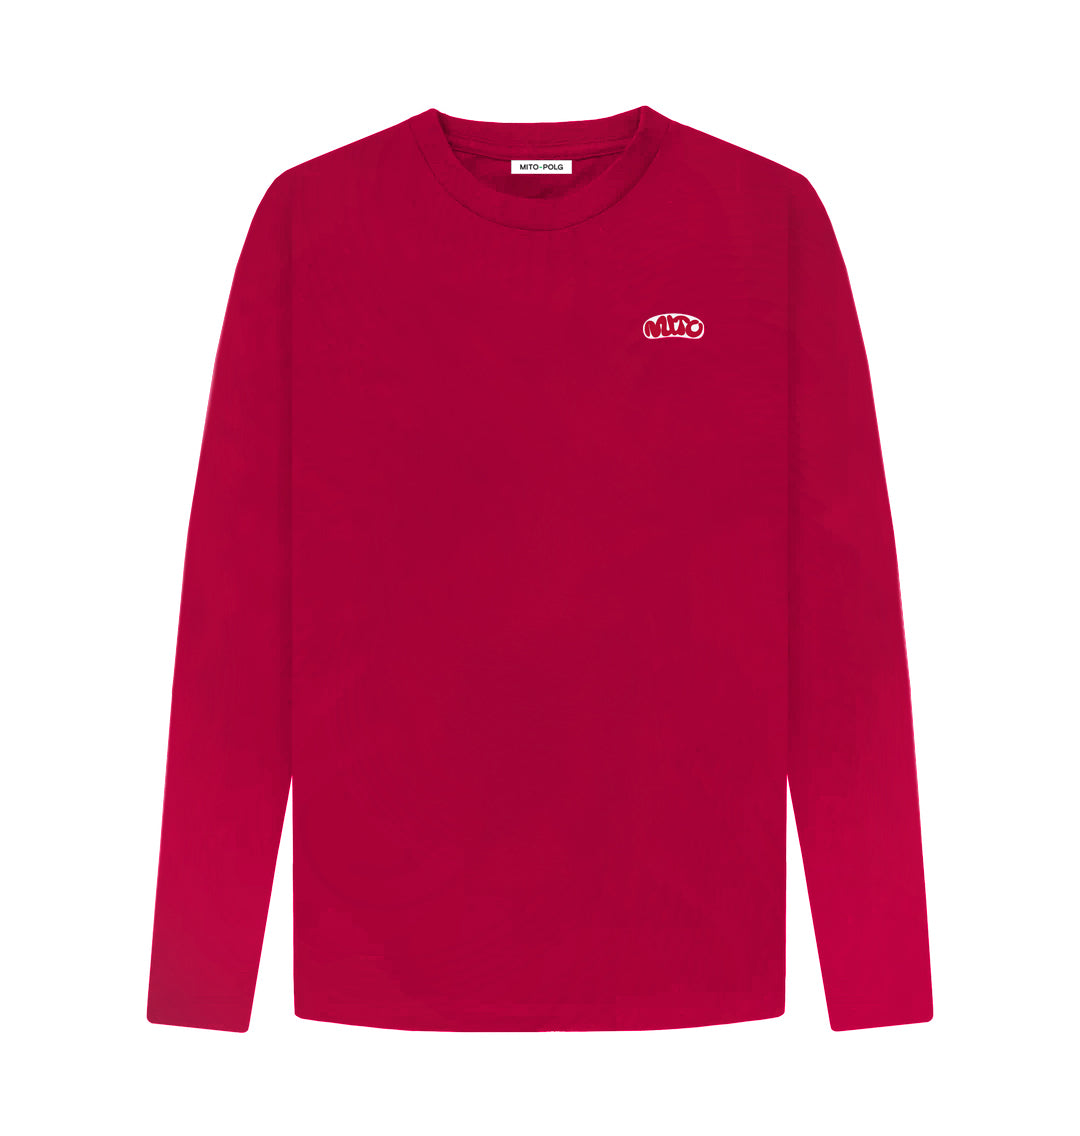 Red MITO Long-Sleeved Shirt